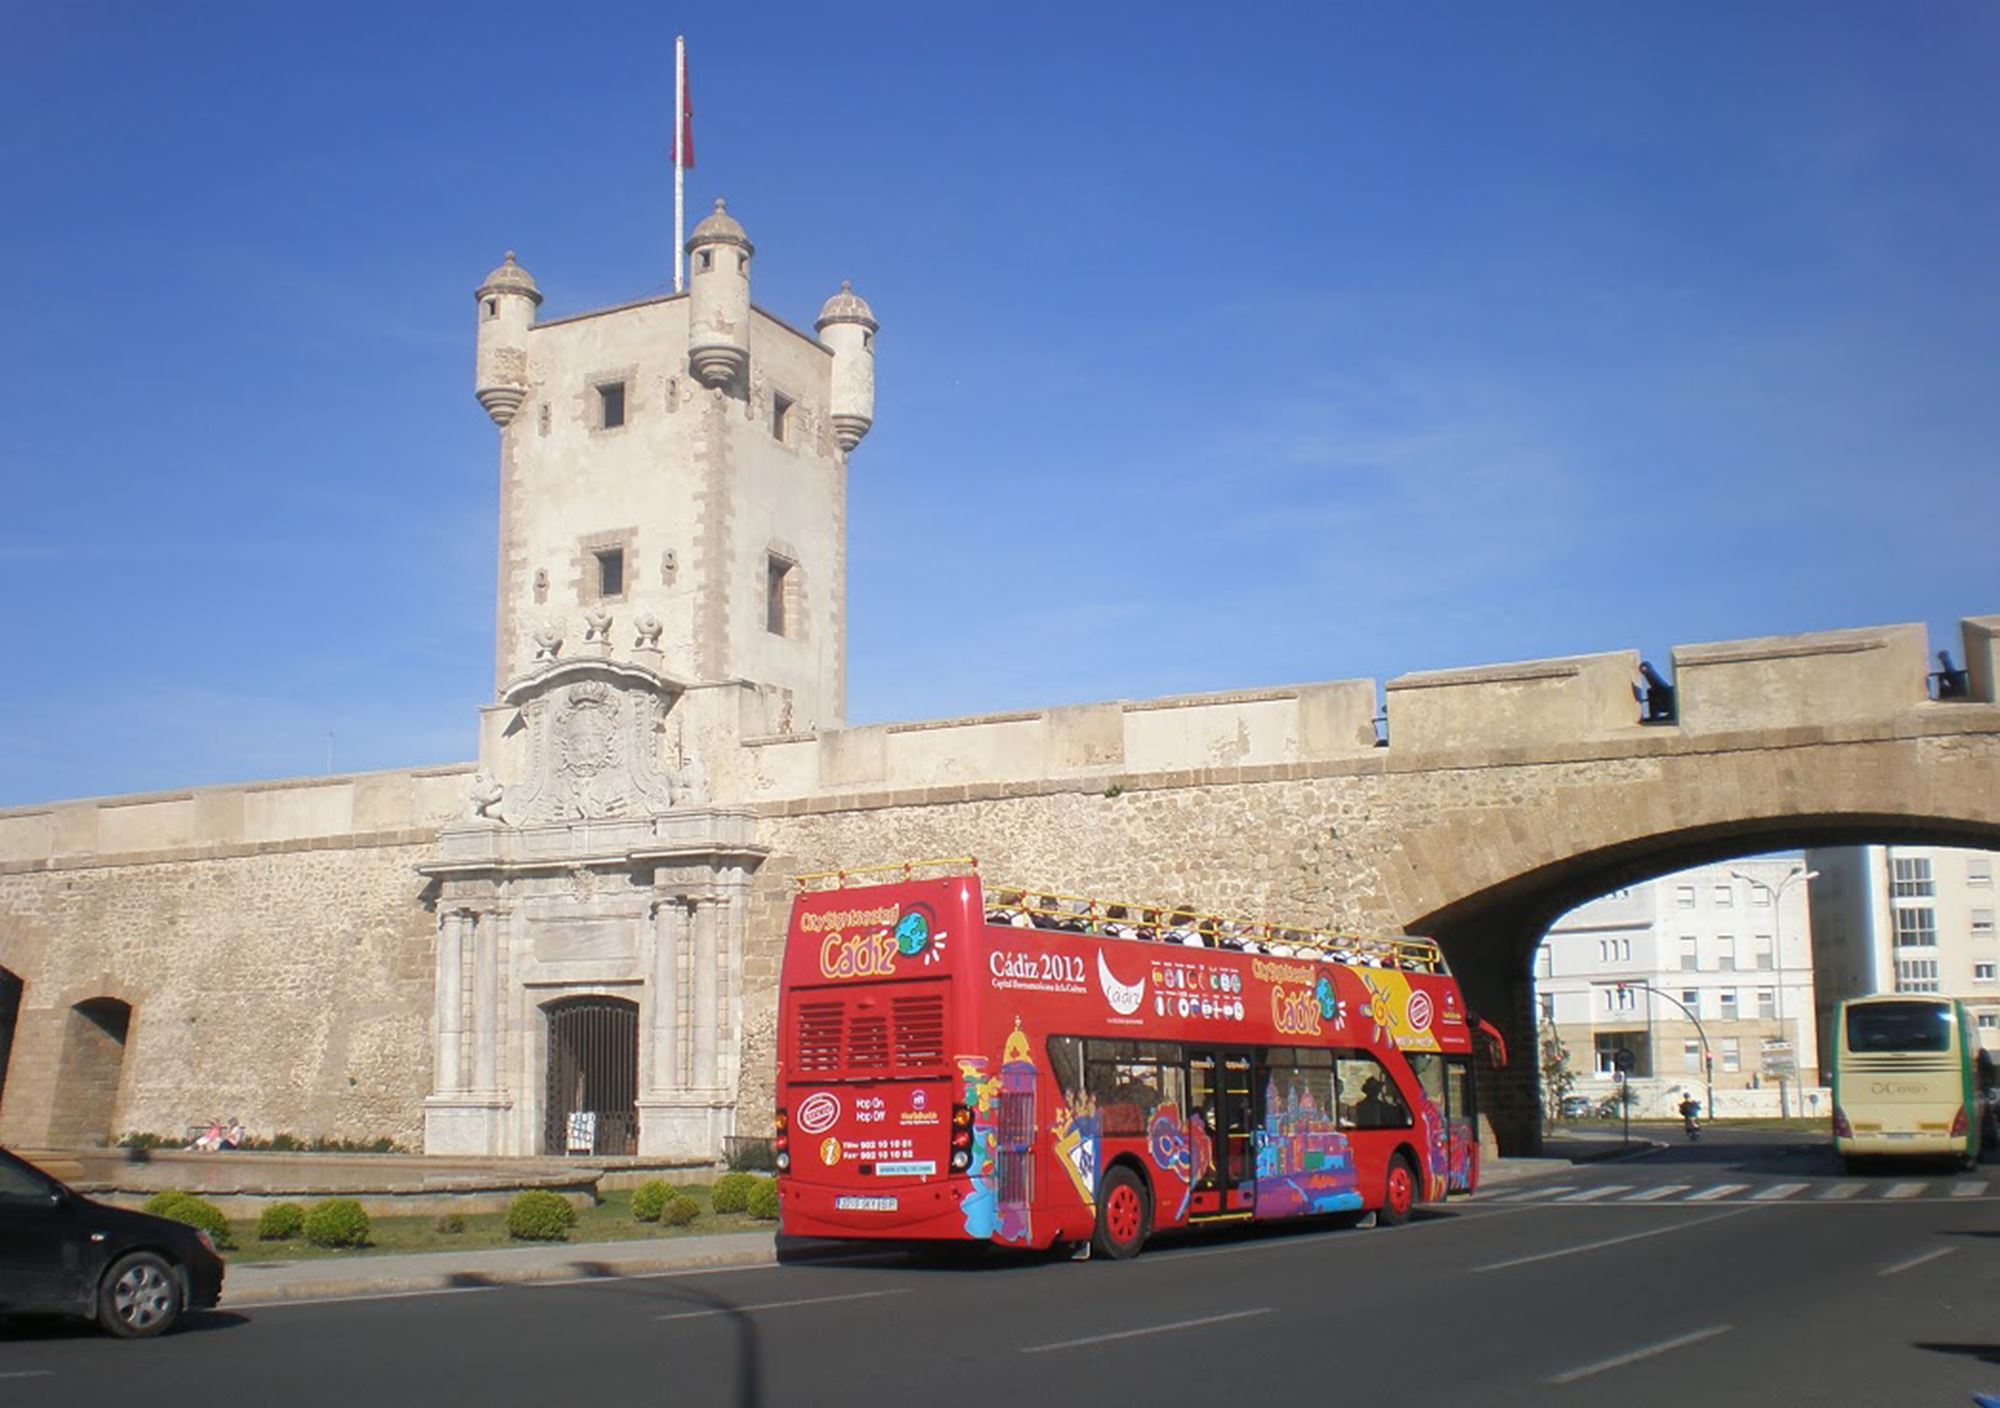 reservieren tickets besucht Touren Fahrkarte Eintrittskarten tickets Touristikbus City Sightseeing Cadiz